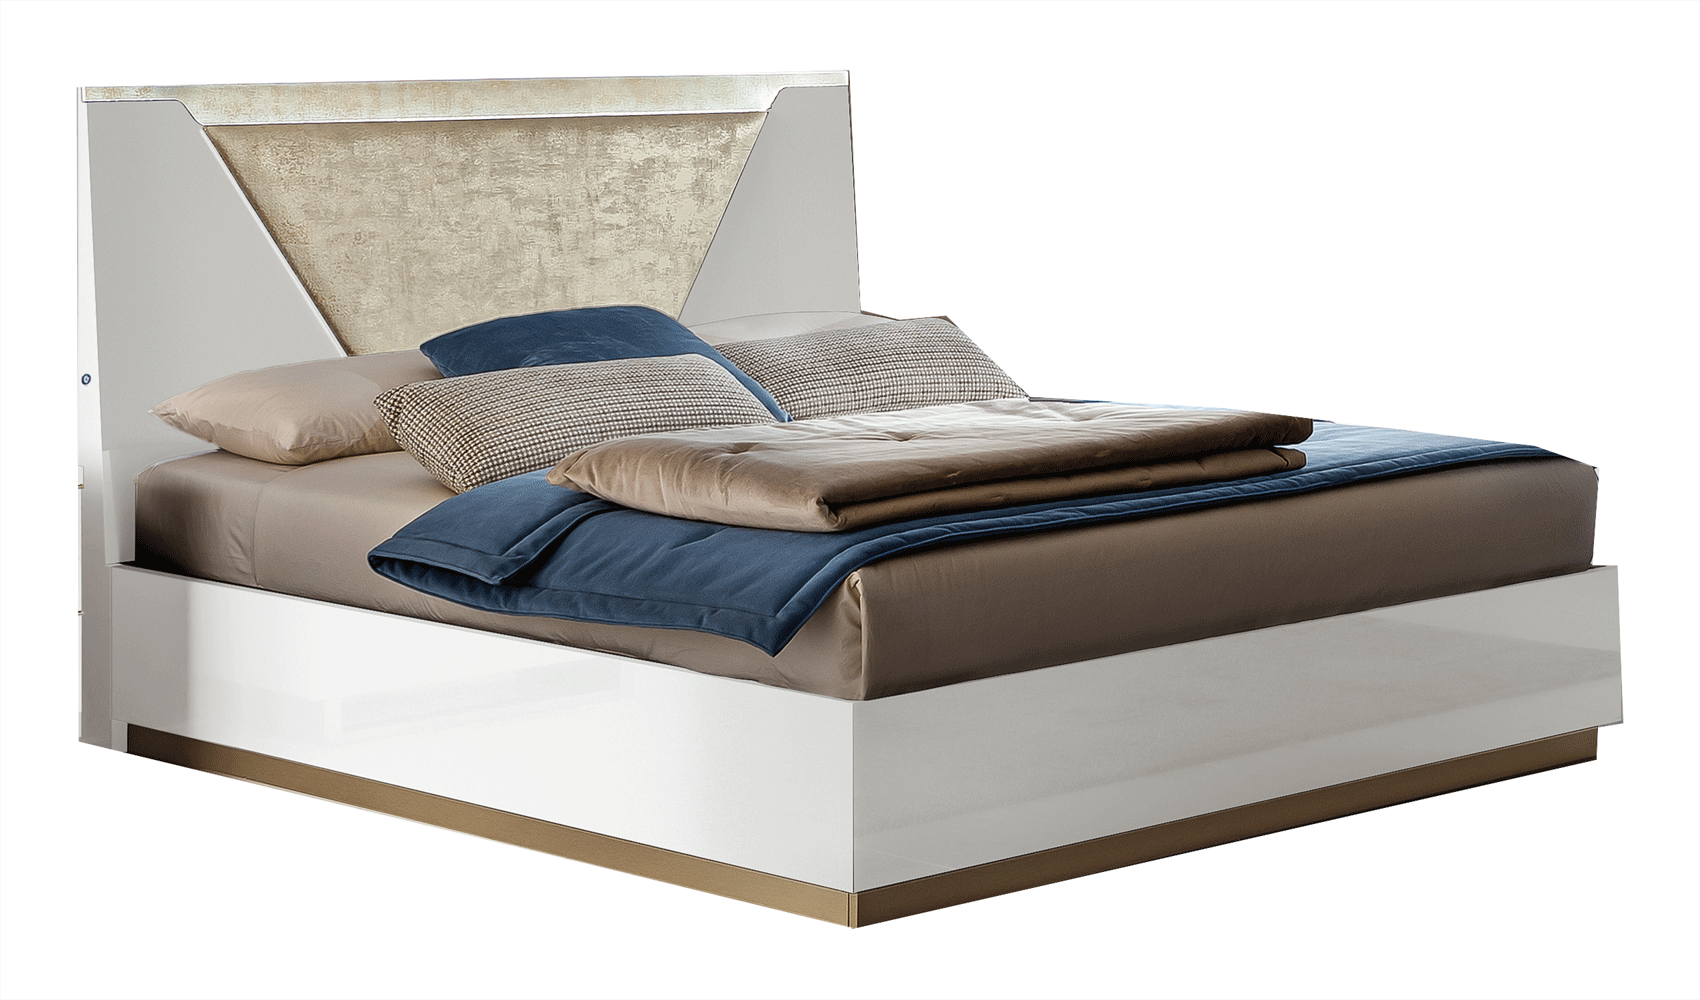 Bedroom Furniture Nightstands Smart Bed White